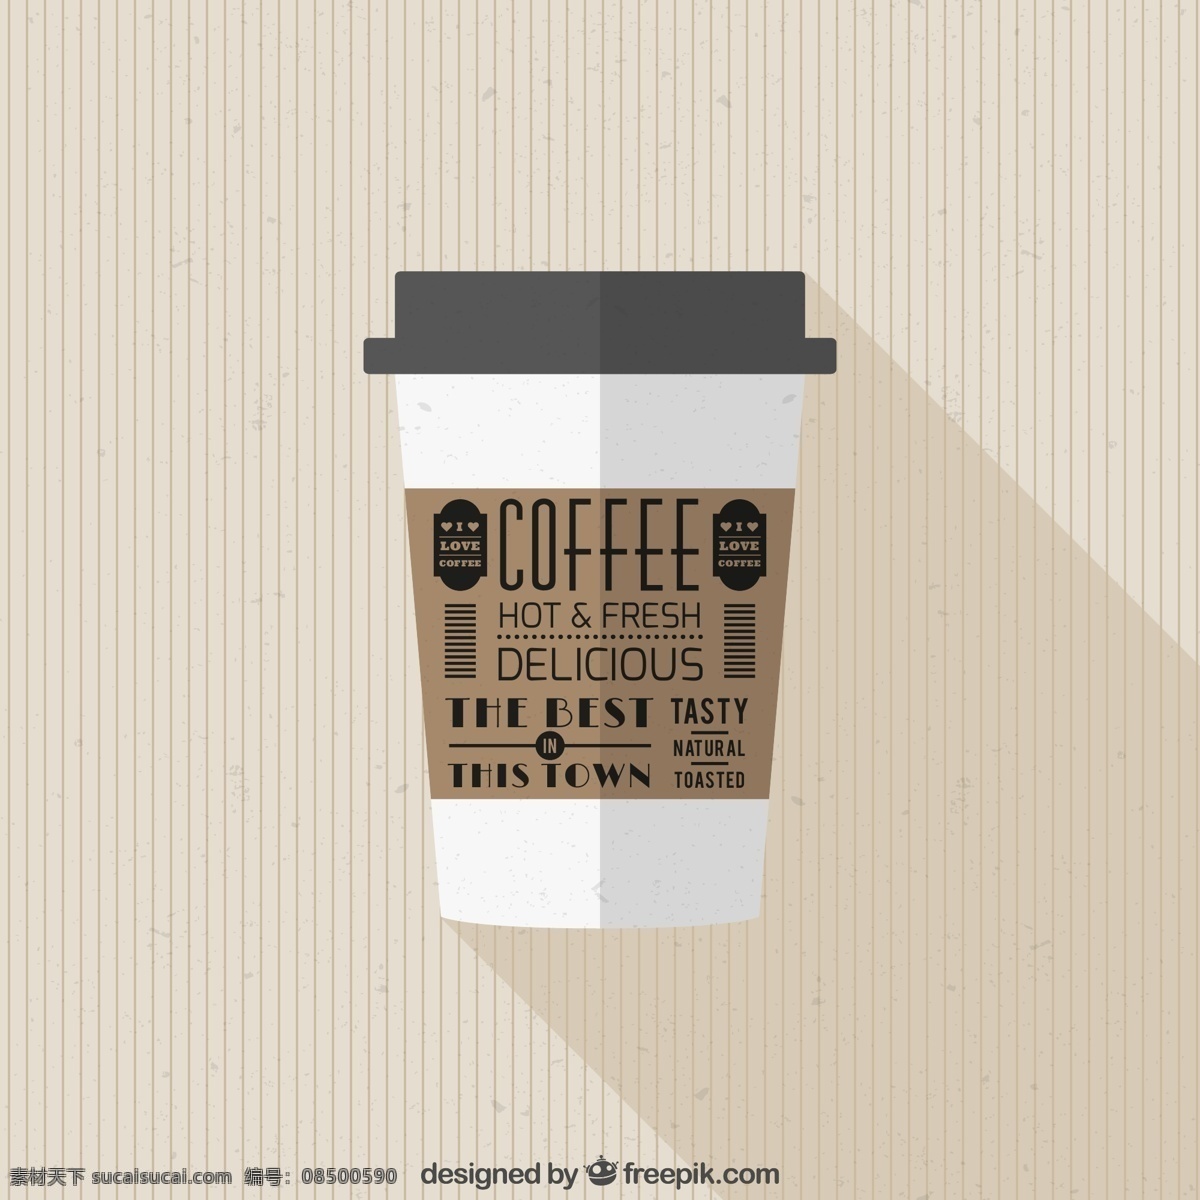 扁平化 外卖 咖啡 外卖咖啡 咖啡杯 杯子包装设计 咖啡杯设计 抽象 服装 印刷 矢量 生活百科 生活用品